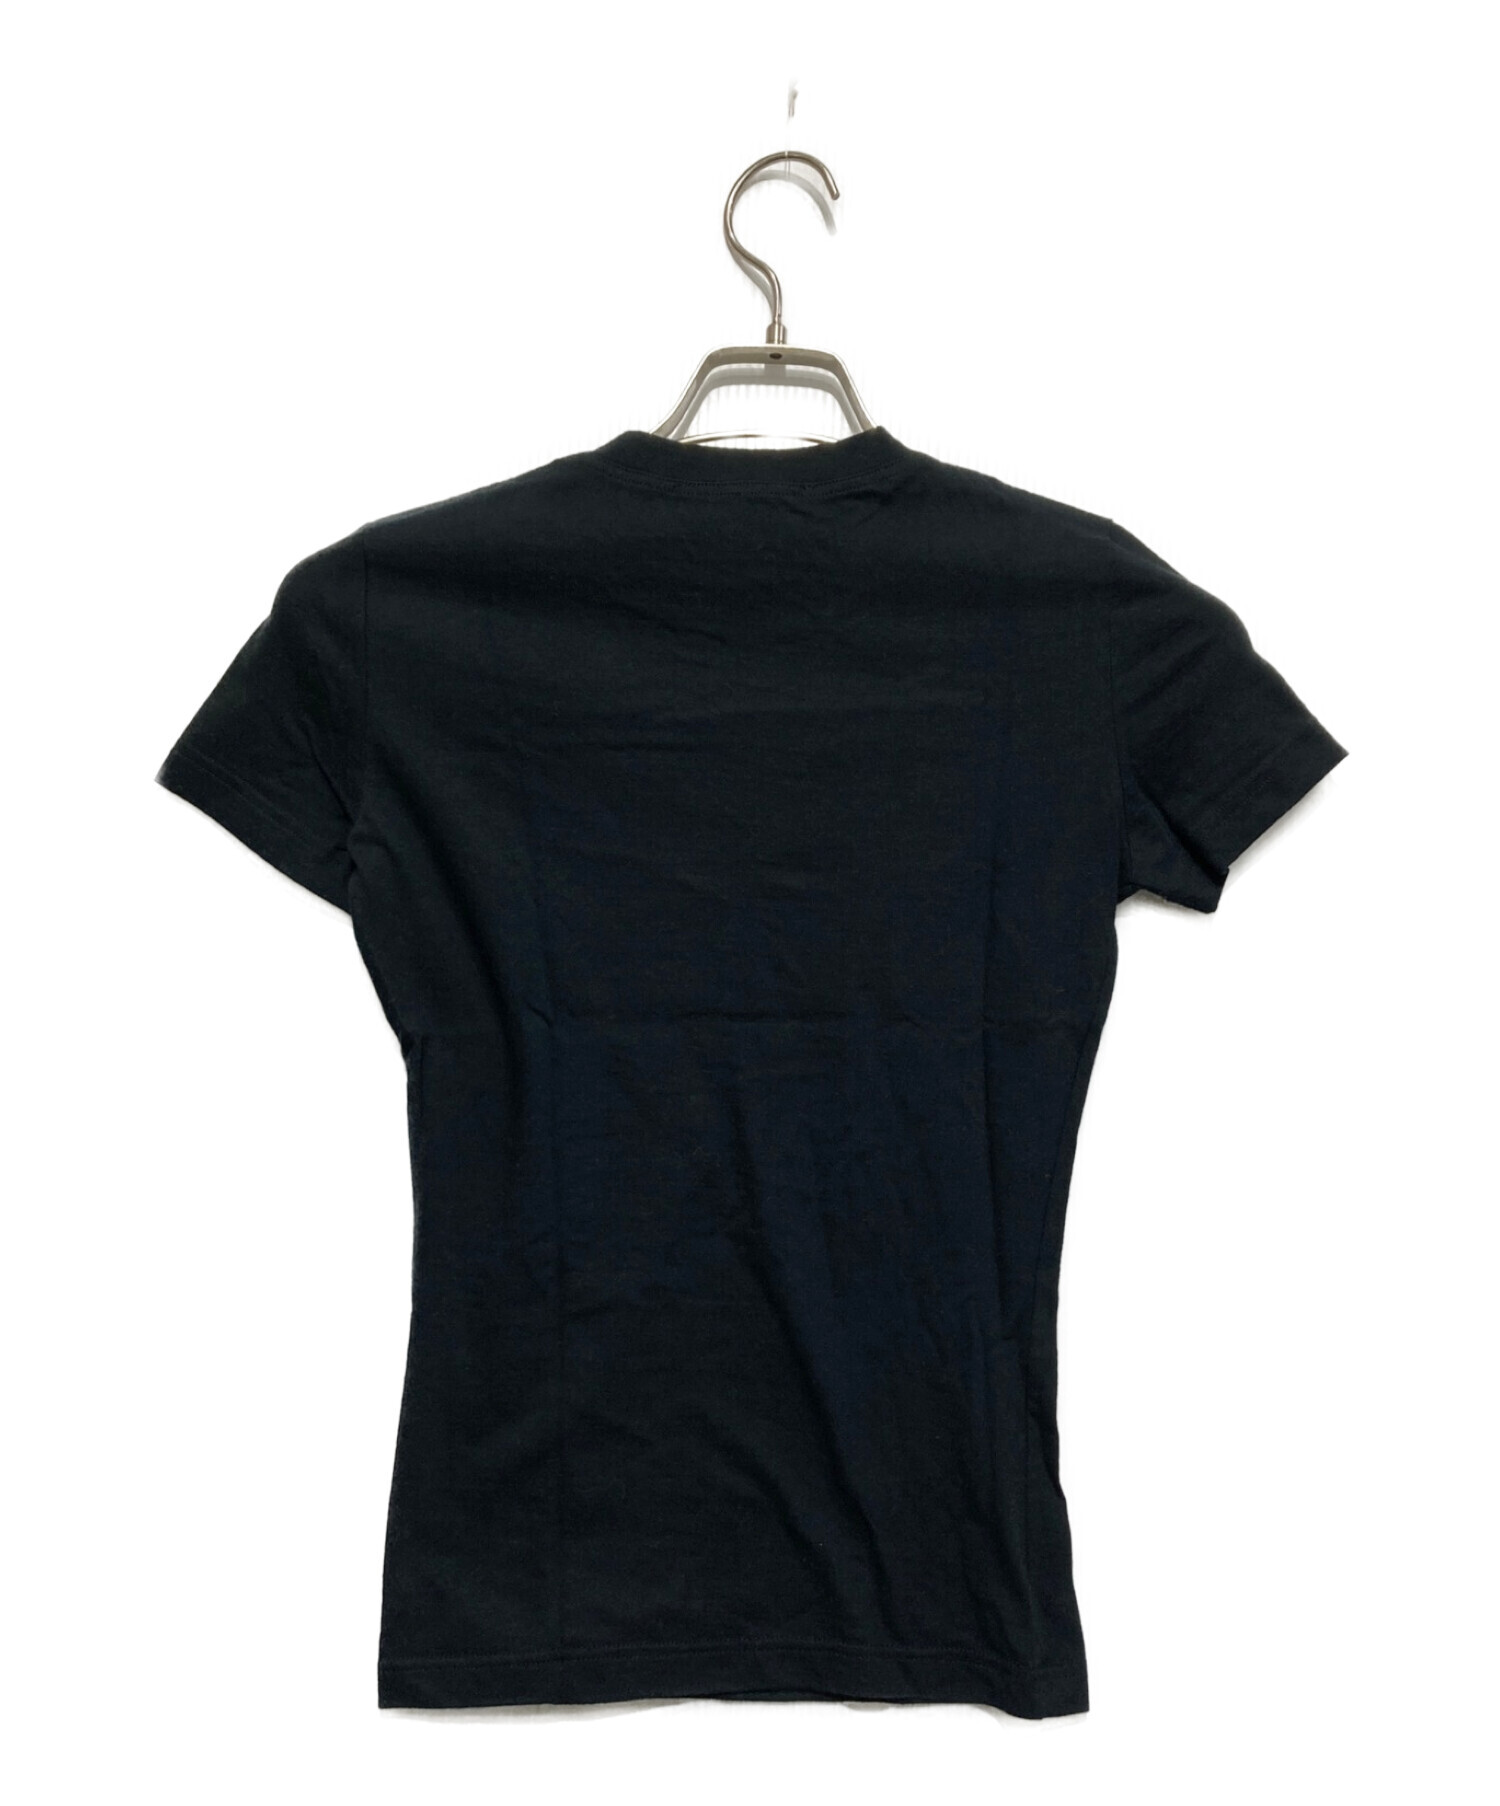 Christian Dior (クリスチャン ディオール) Addict Tシャツ ブラック サイズ:36